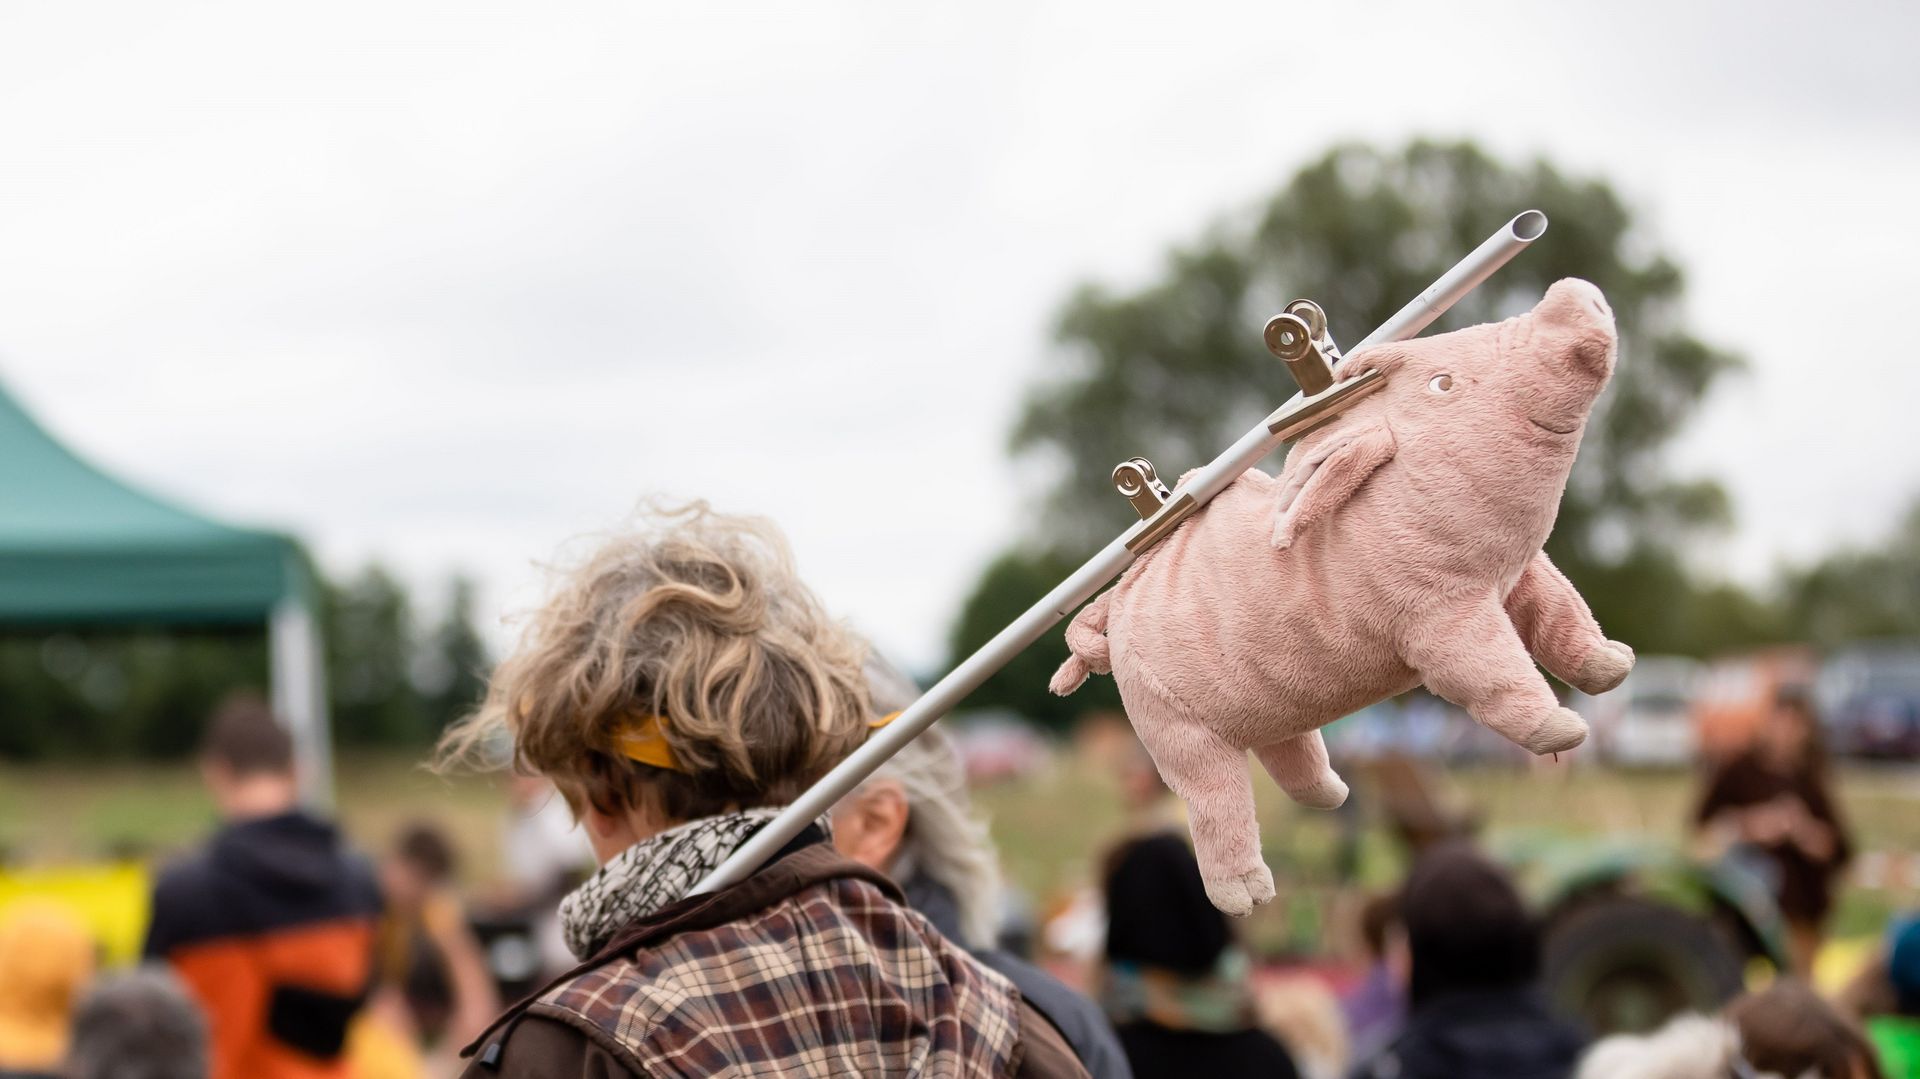 Frau von hinten trögt Stoff-Schwein an Stange